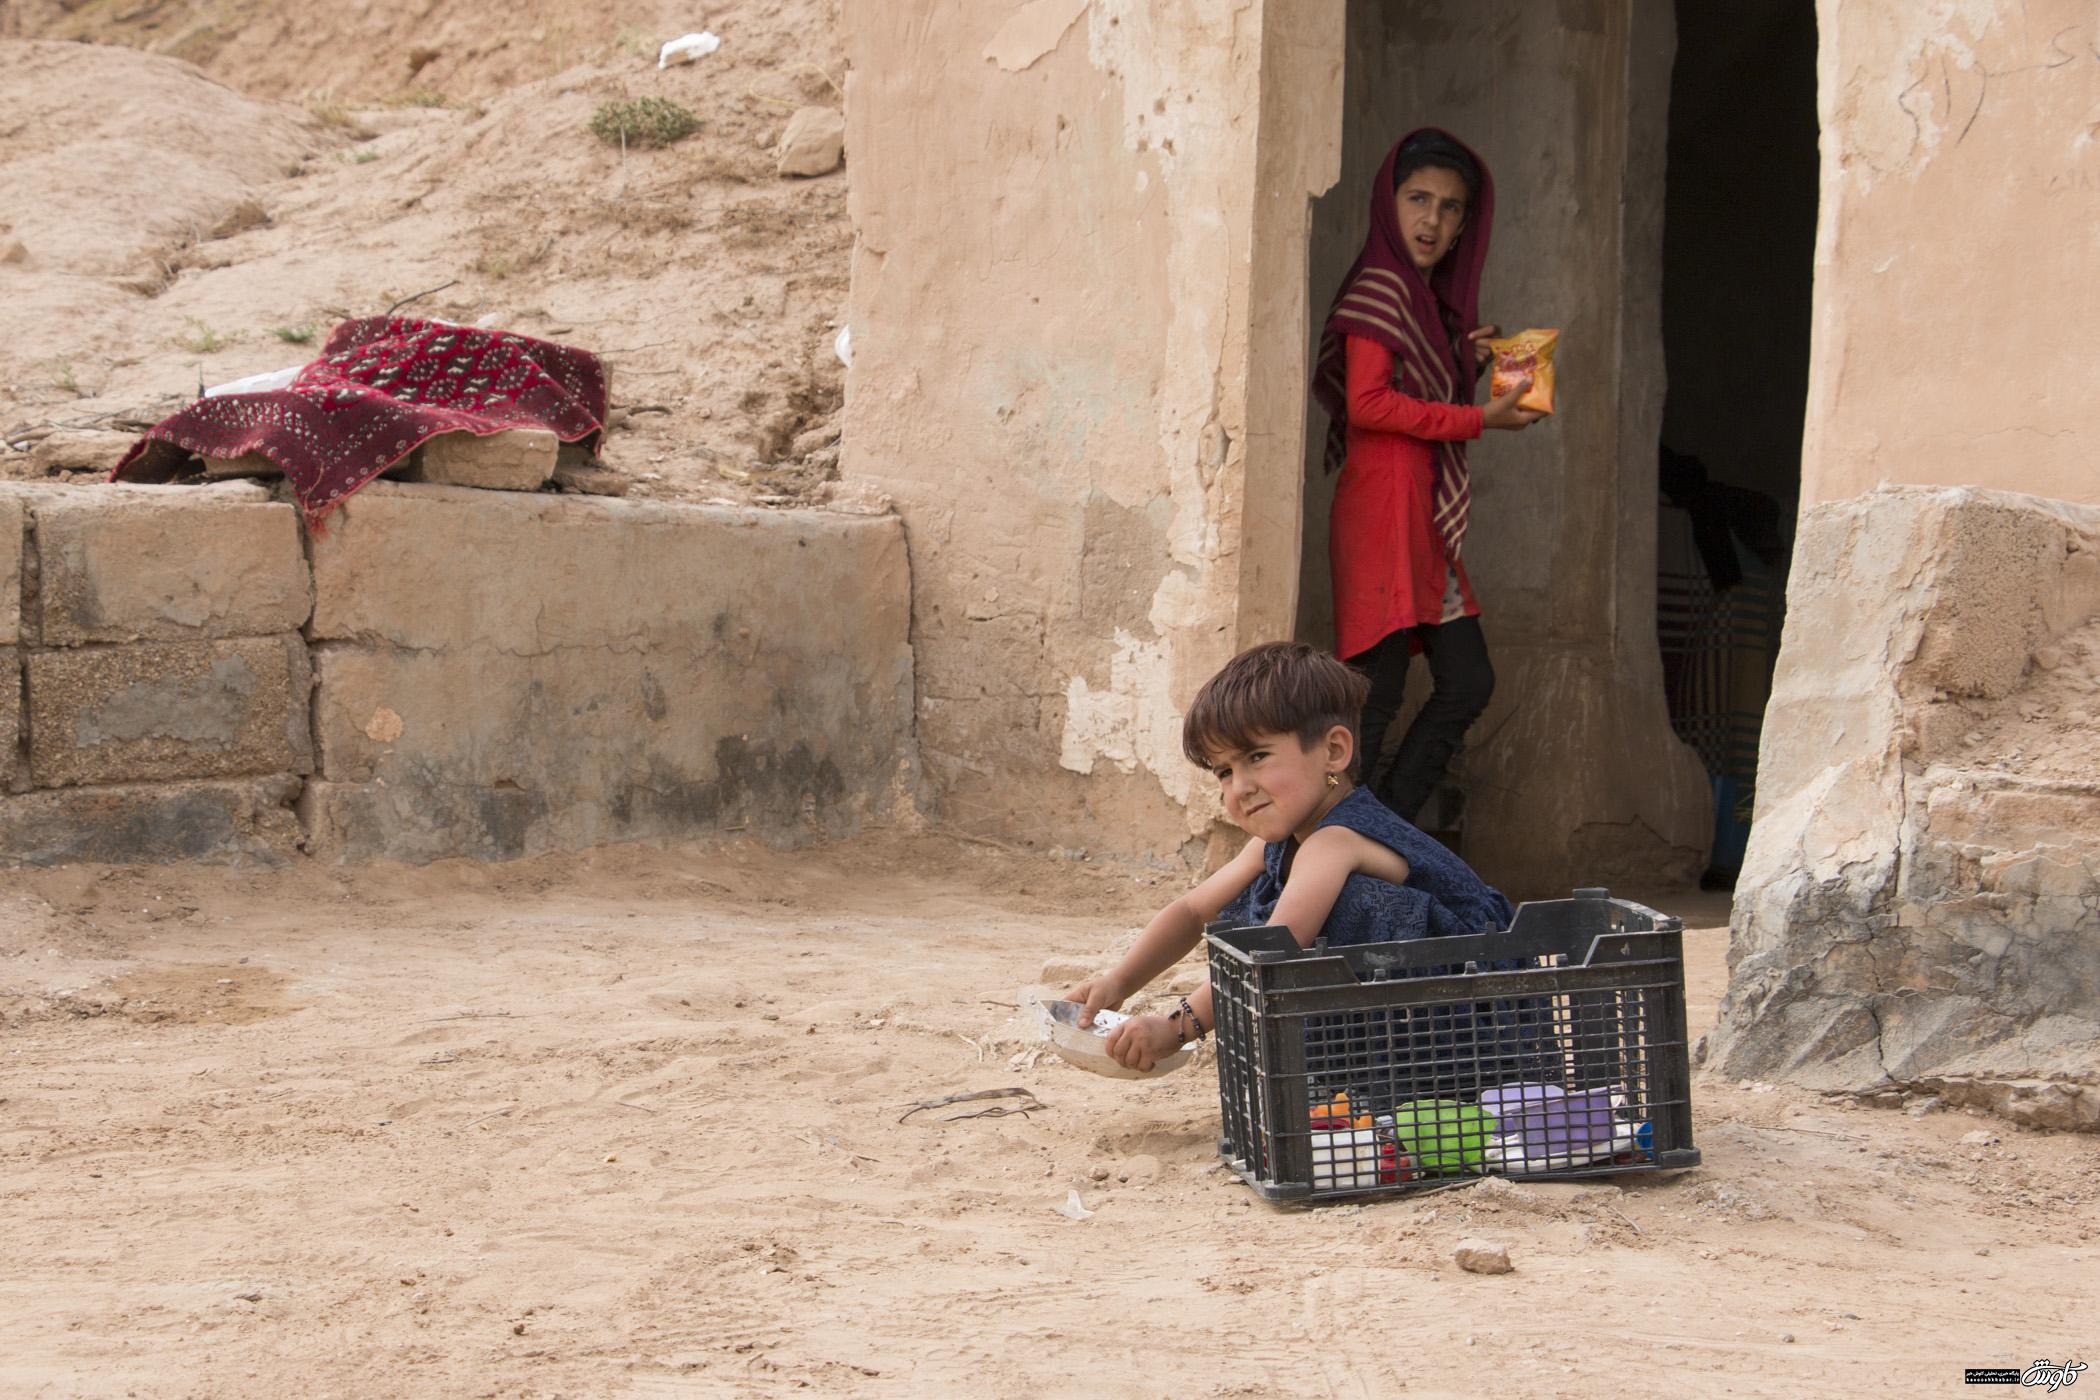 سرگردانی مردم سیل زده و کمبود مکان های اسکان  + گزارش تصویری